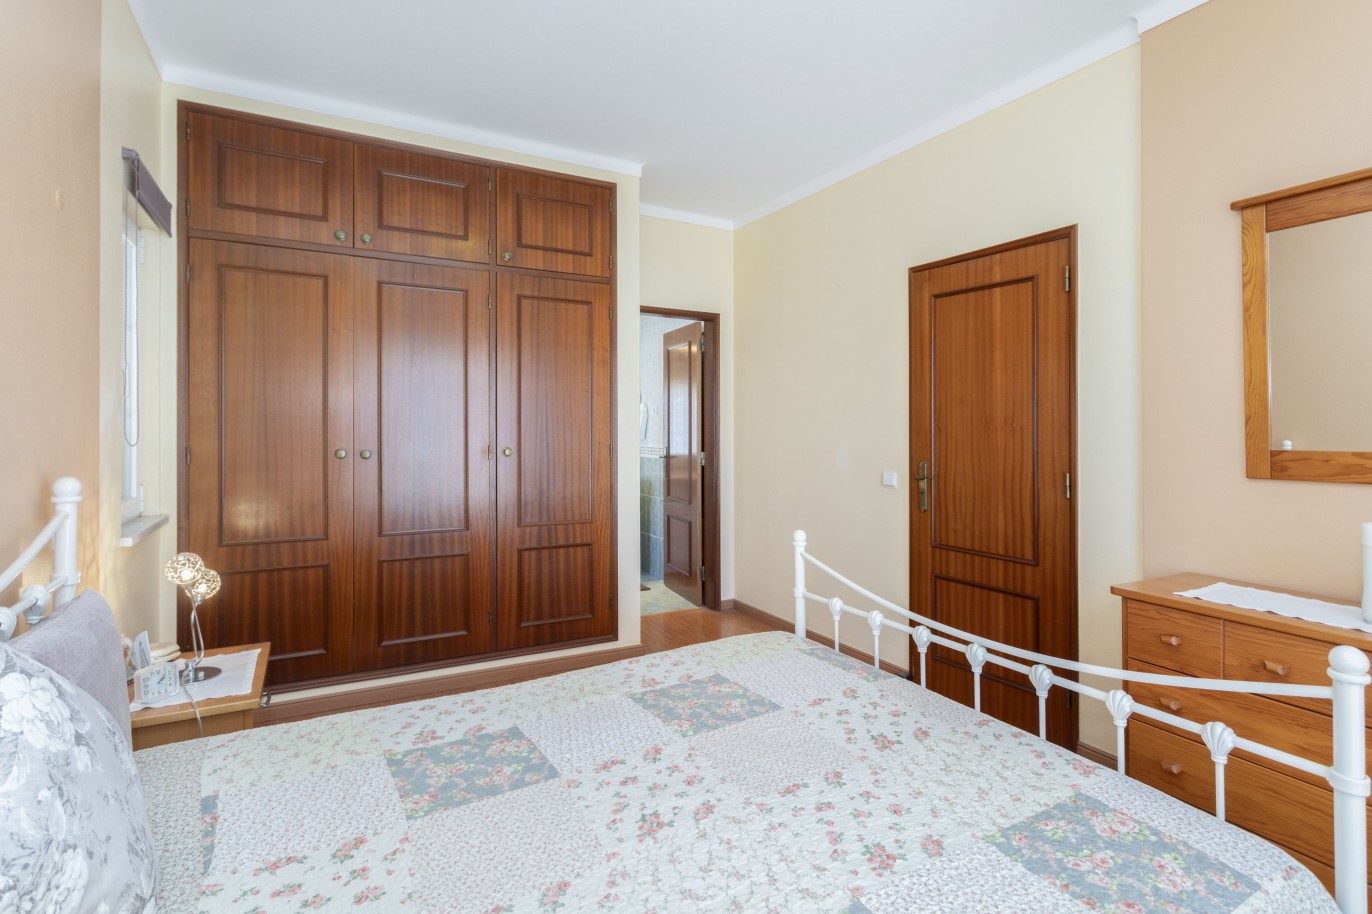 3 bedroom villa for sale in Porto de Mós, Algarve_233232